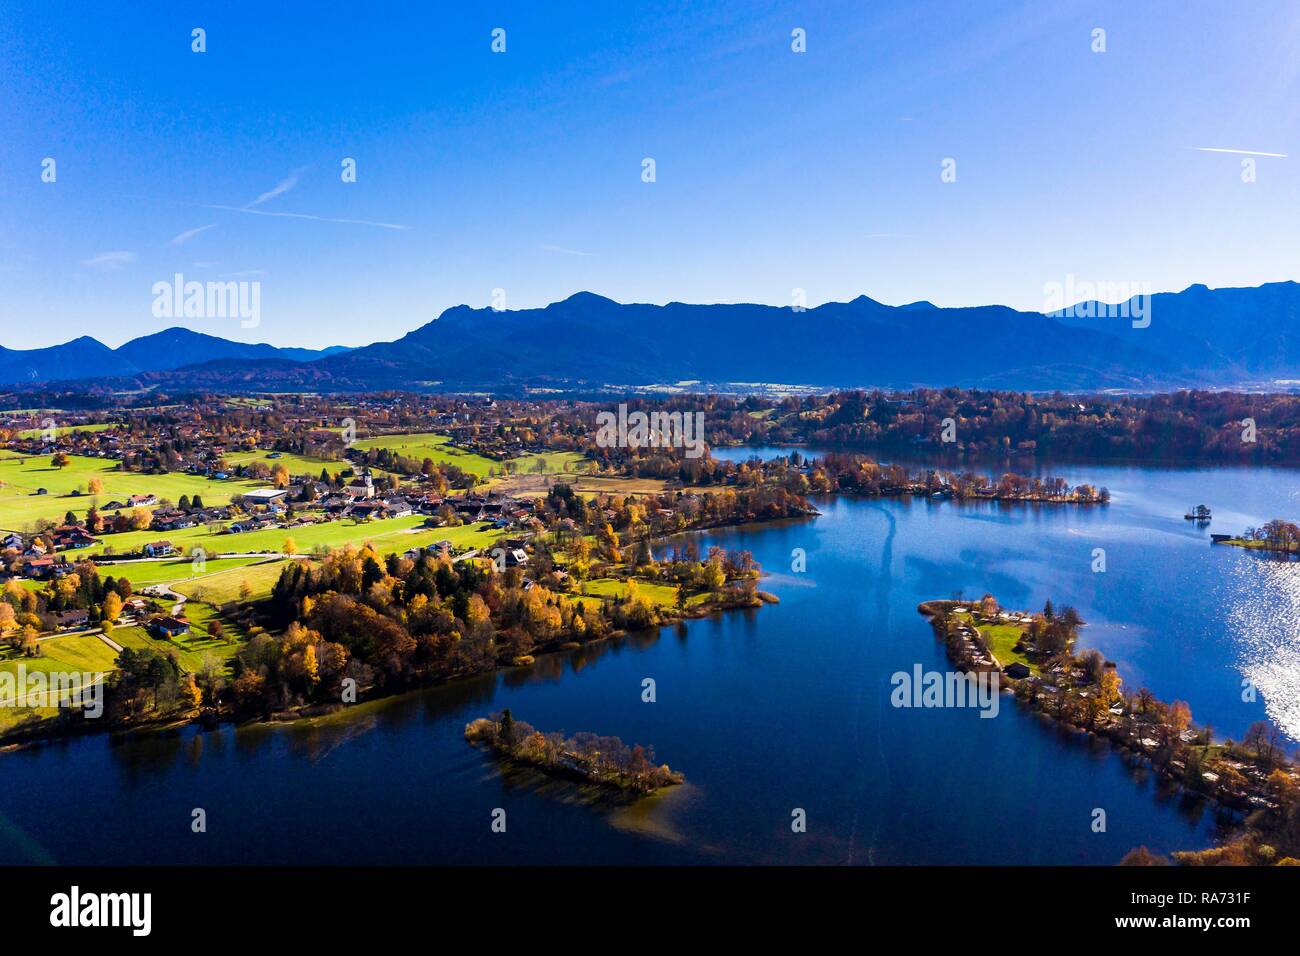 Aerial view, Lake Staffelsee with islands, Rieden, region Garmisch Partenkirchen, Upper Bavaria, Bavaria, Germany Stock Photo